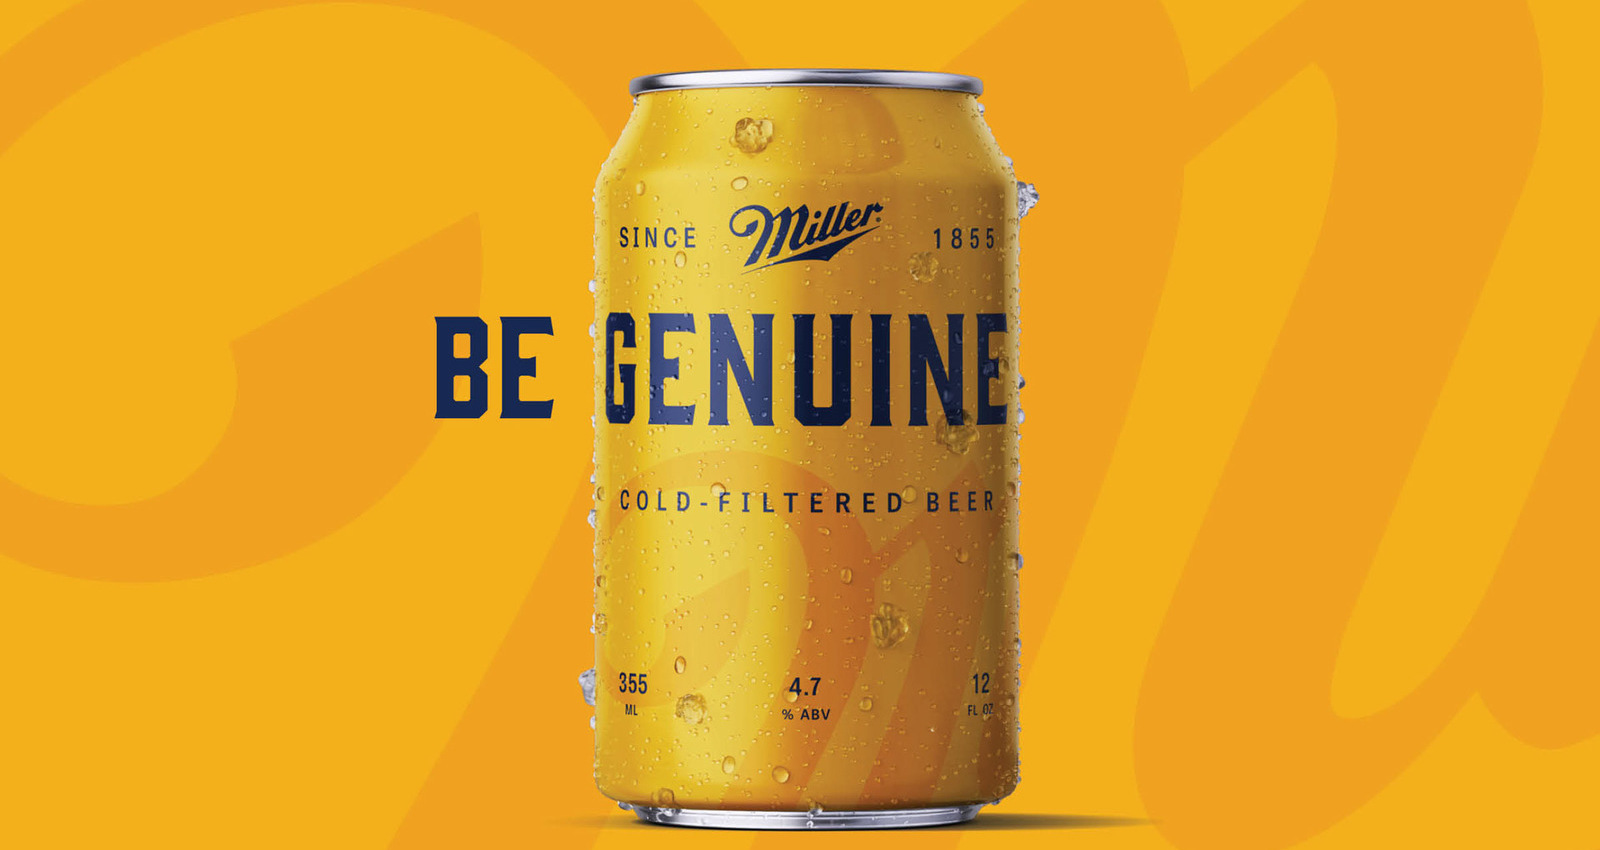 Miller Genuine - Beer for Genuine People